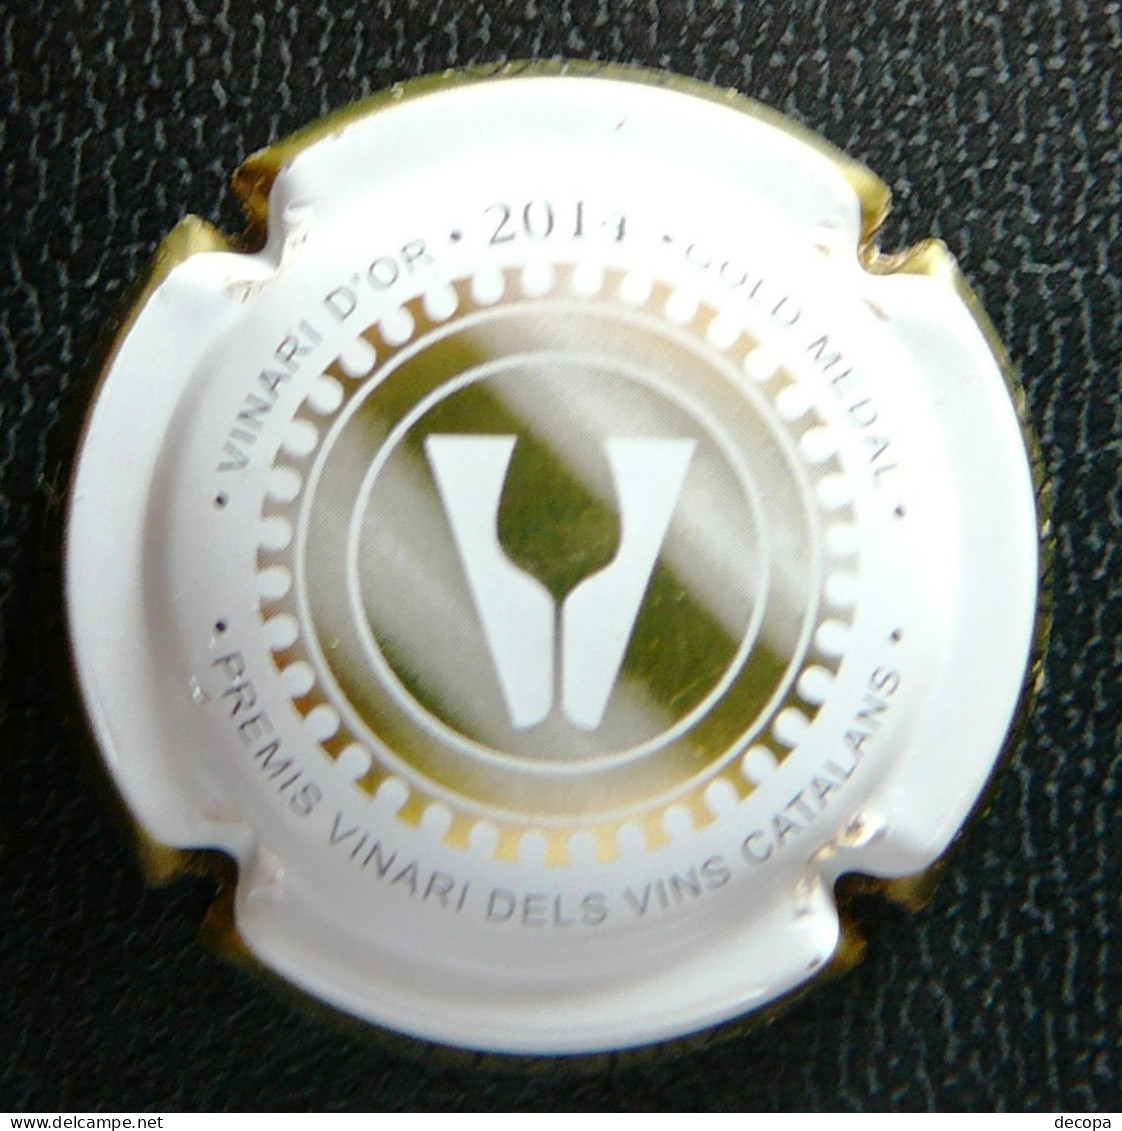 (dc-057) Capsule Cava Pere Olivella Galimany - Gold Medal 2014   -  Placa Premis Vinari Dels Vins Catalans - Schuimwijn